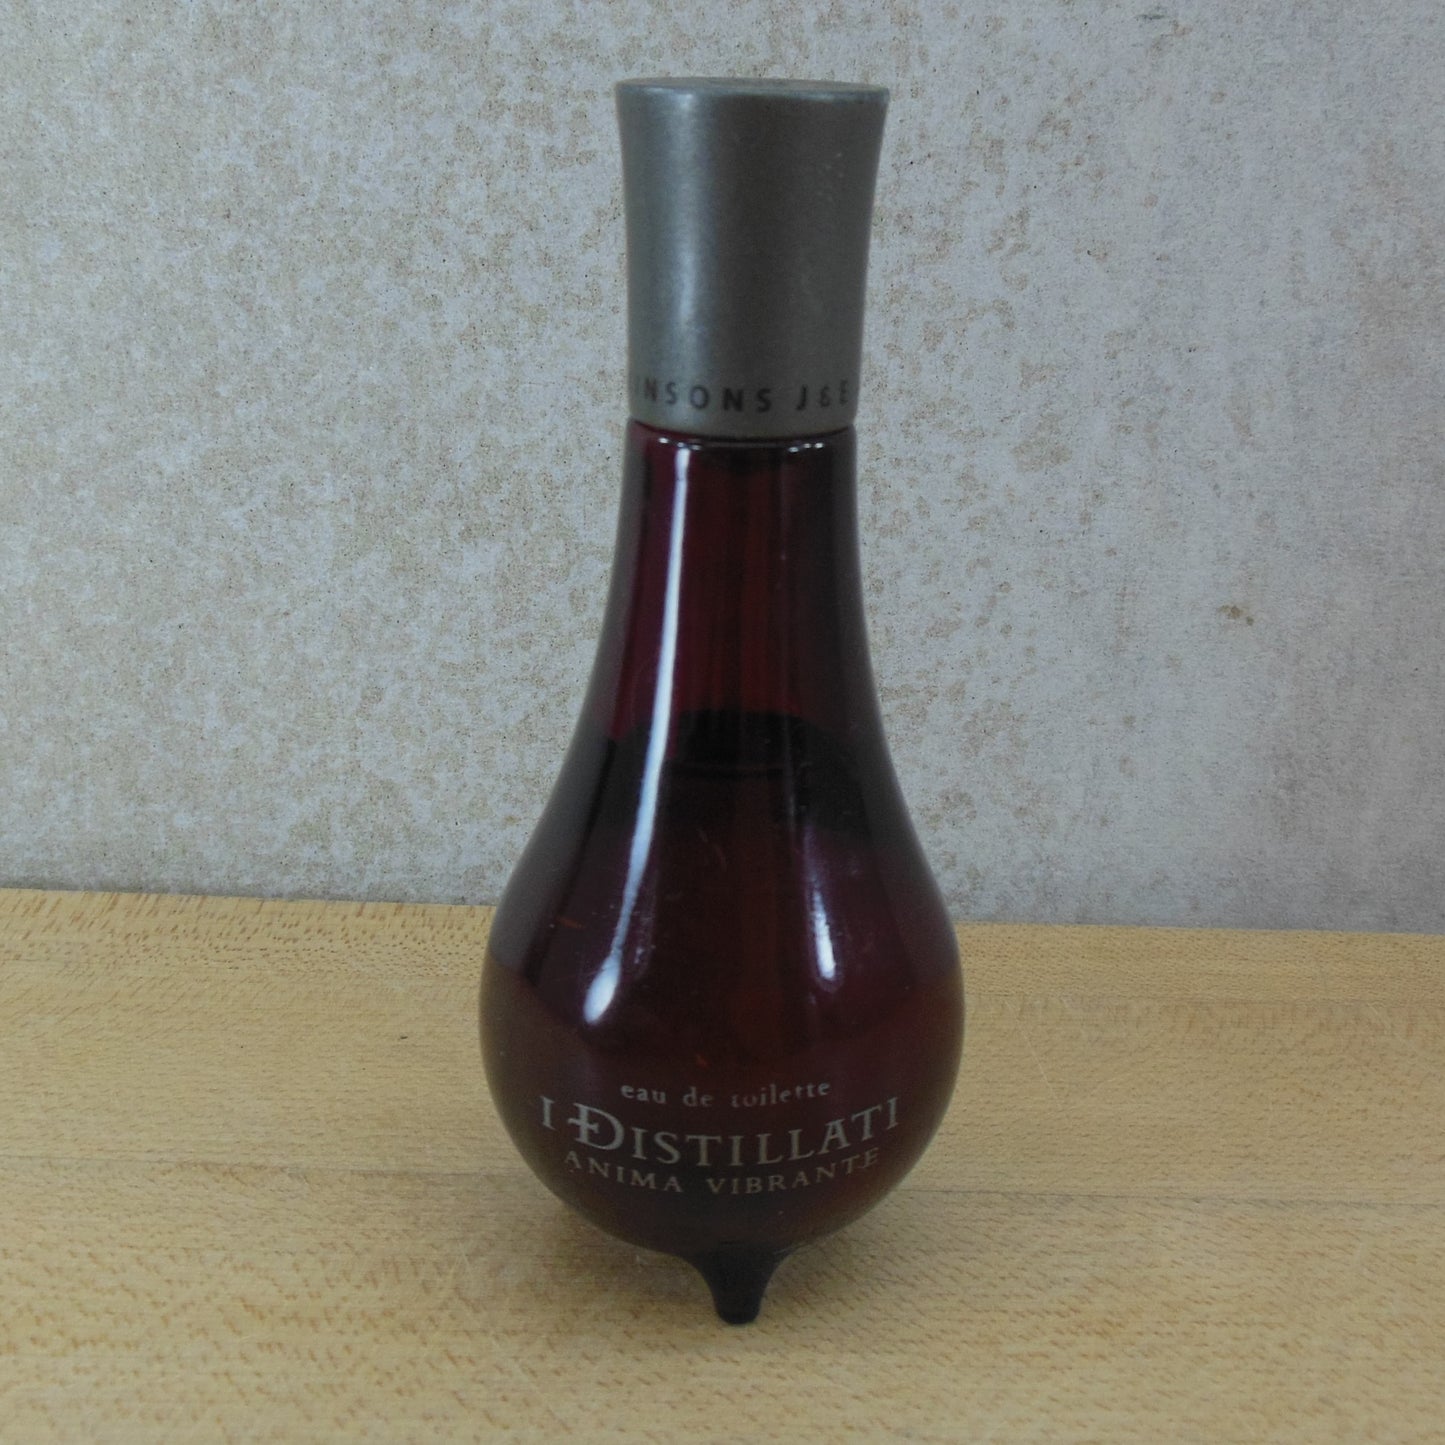 J&E Atkinsons I Distillati Anima Vibrante Vibrant Soul 30 ml 1.0 oz  Cologne For Men partial bottle